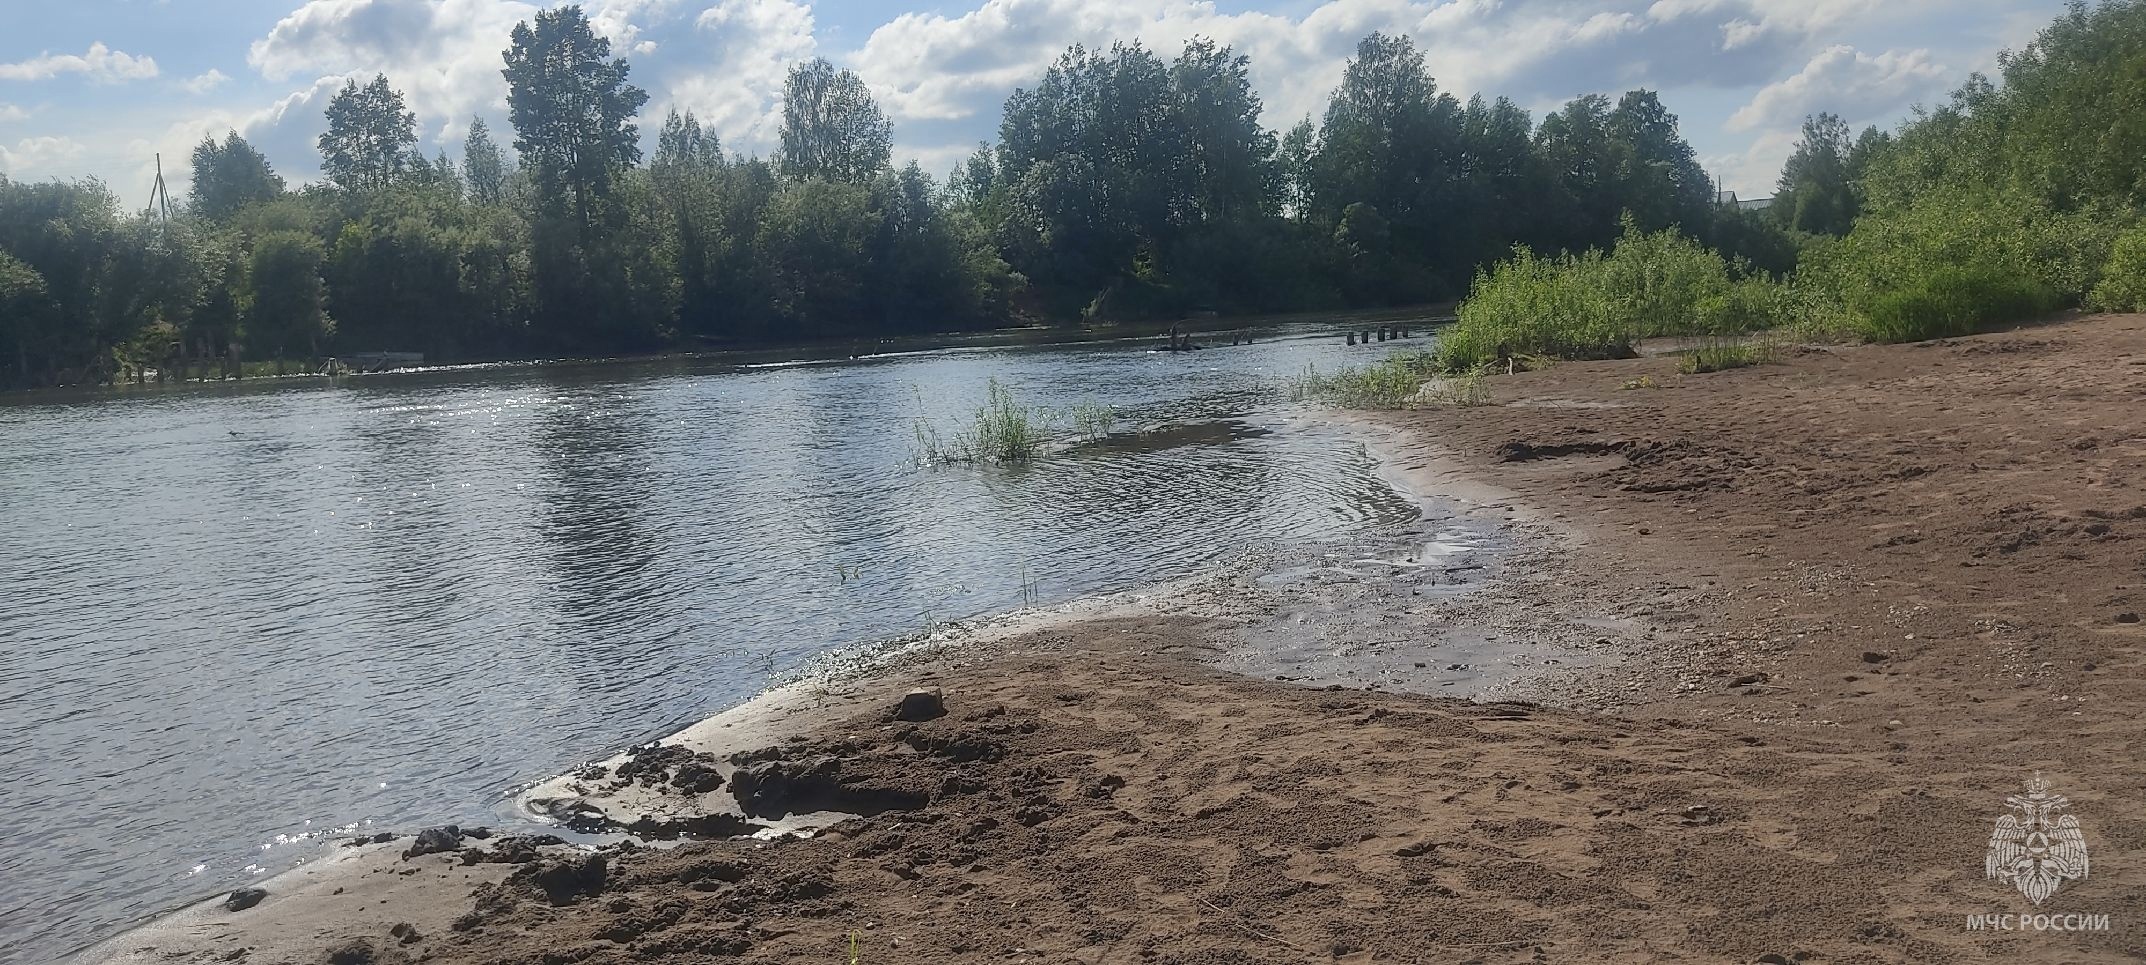 В Кировской области стали известны обстоятельства гибели двух мужчин в реках